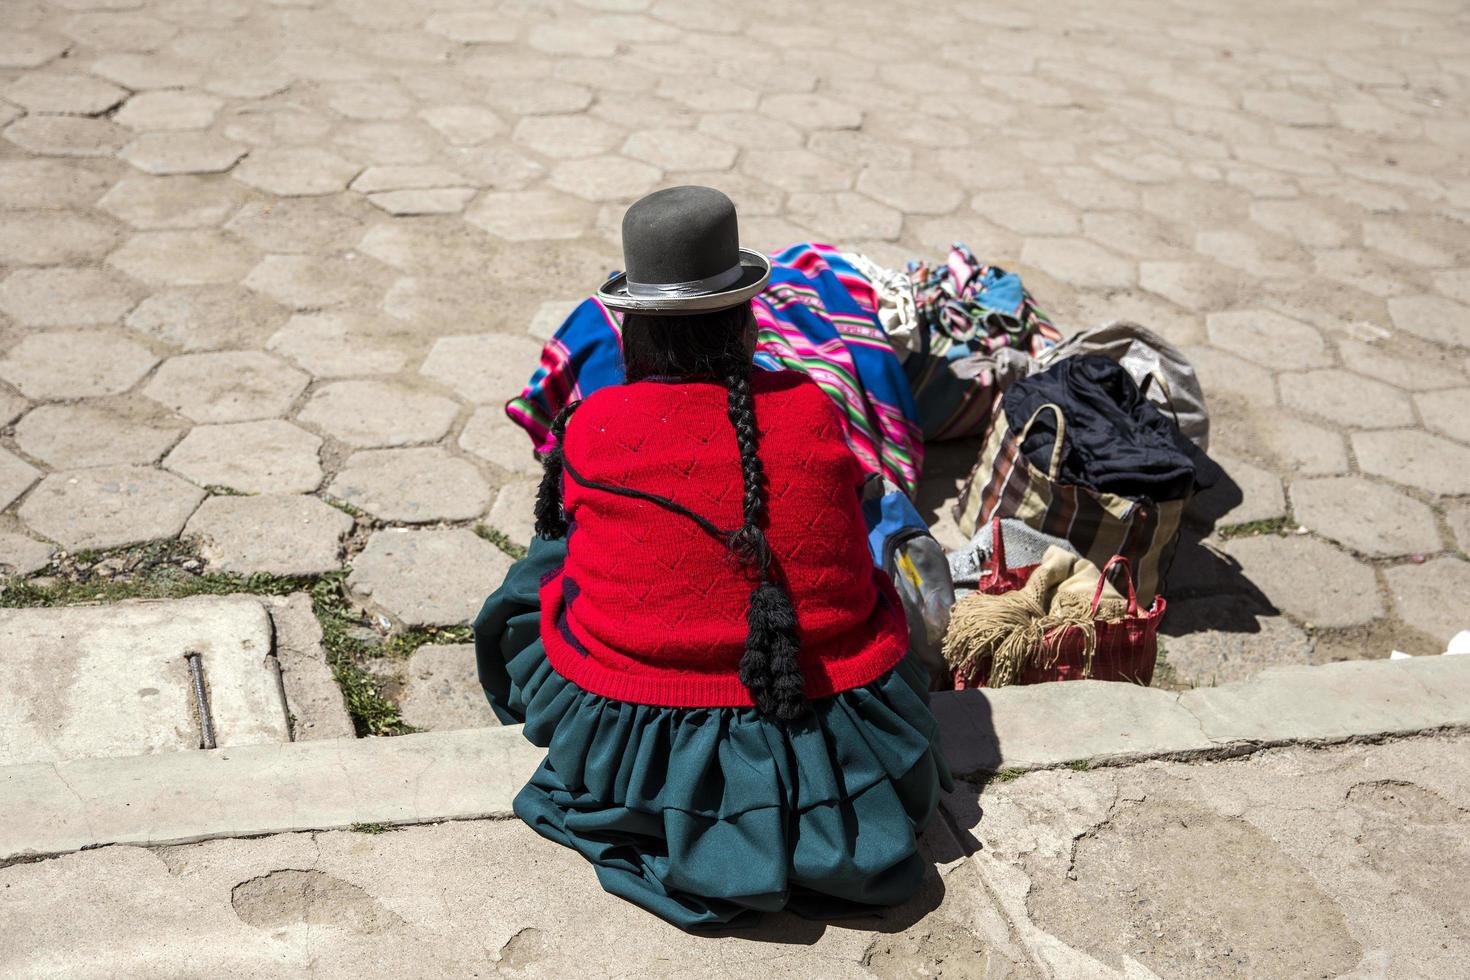 titicaca, bolívia, 9 de janeiro de 2018 - mulher não identificada no lago titicaca, na bolívia. titicaca é o corpo de água navegável mais alto do mundo. foto